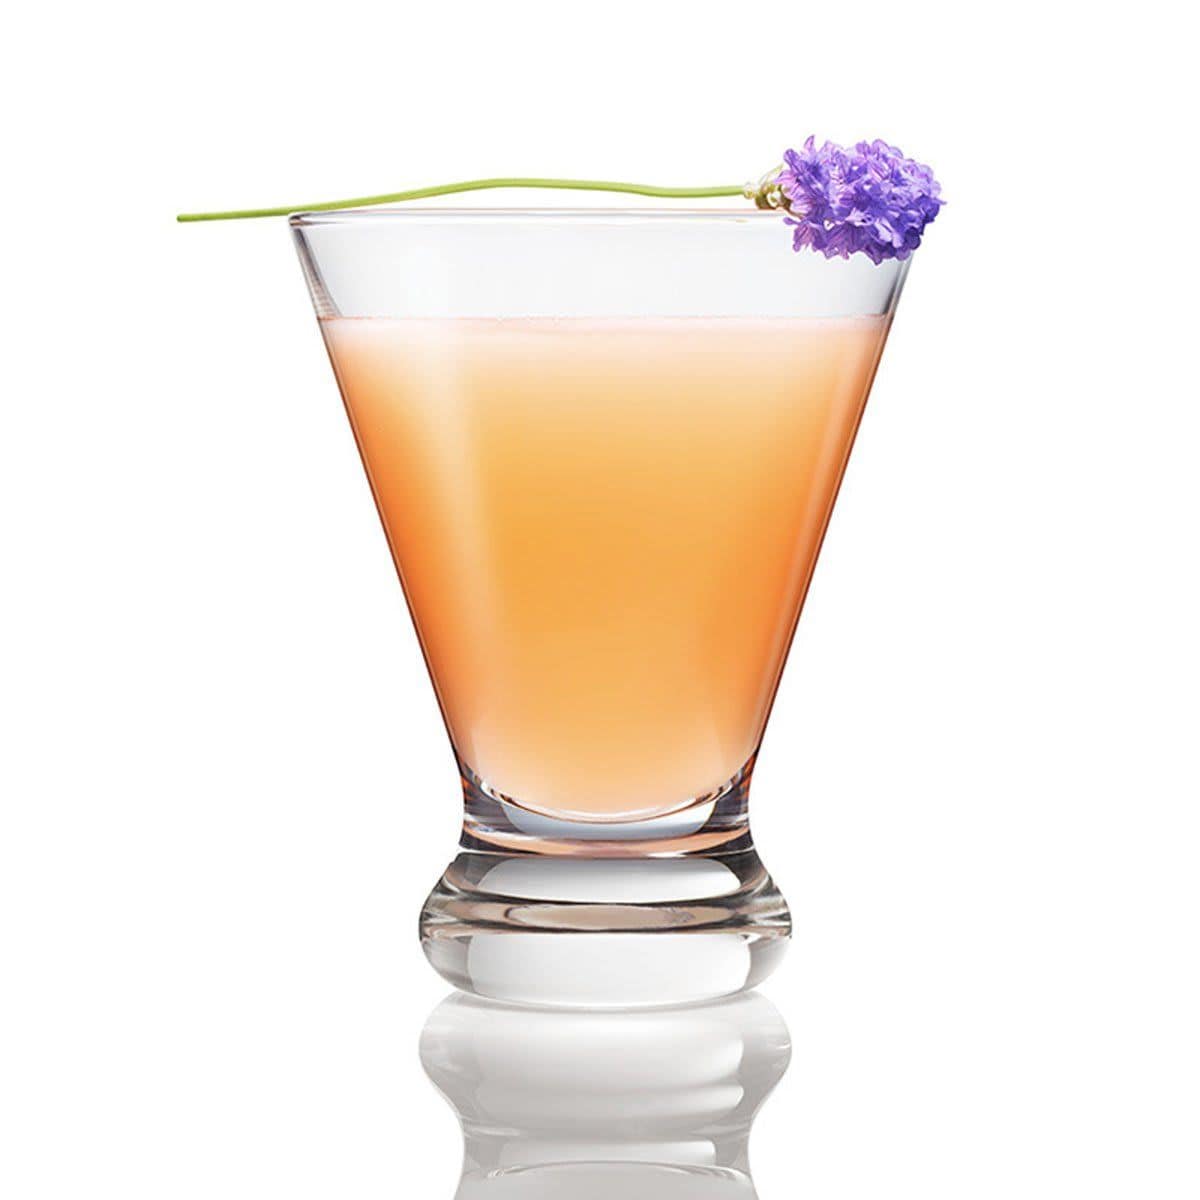 Spring cocktails